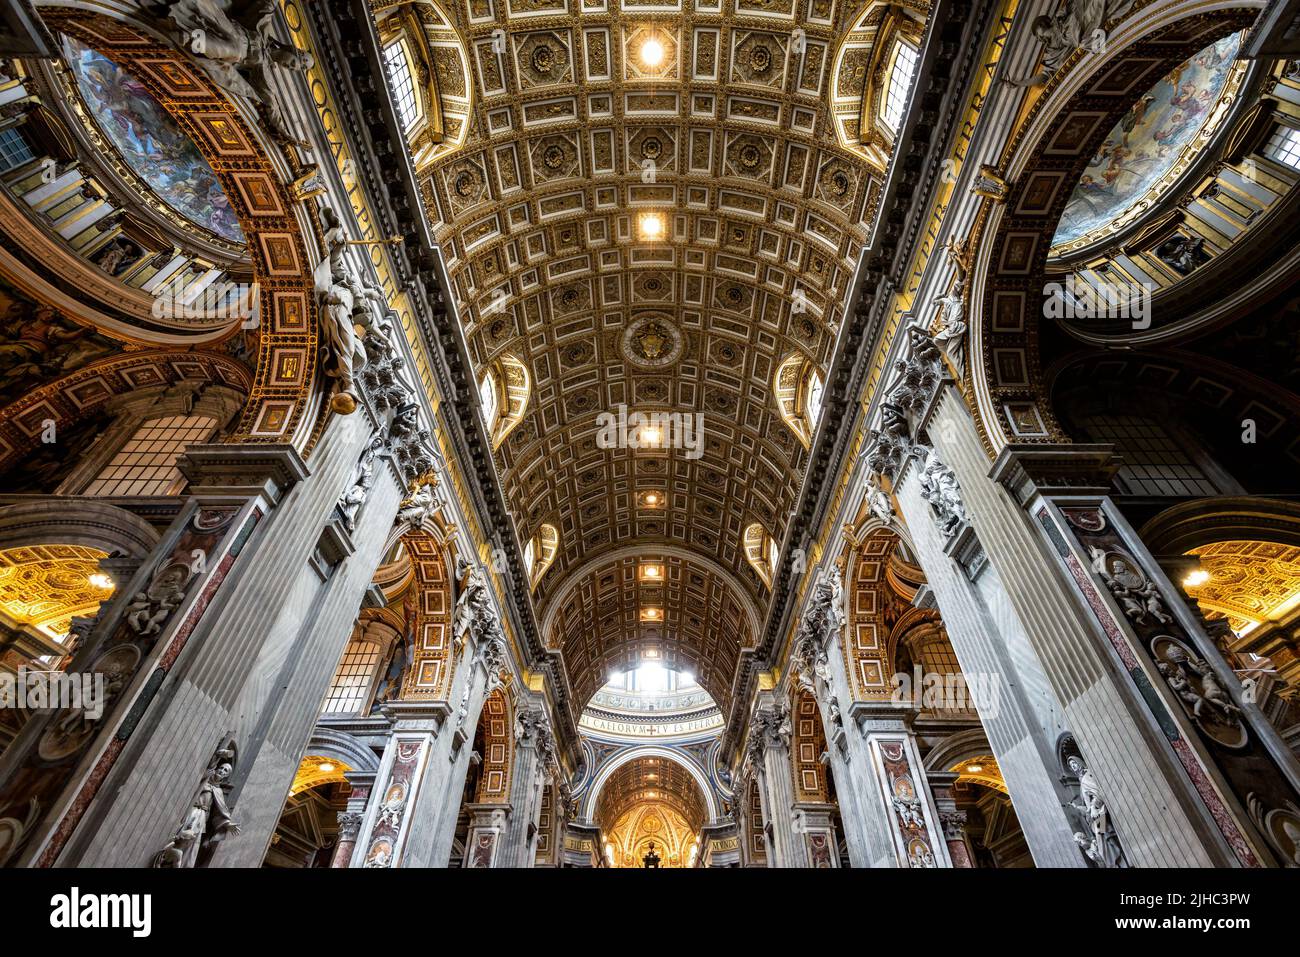 Roma - 12 giugno 2021: All'interno della Basilica di San Pietro, Roma, Italia. La cattedrale di San Pietro è il punto di riferimento di Roma e della Città del Vaticano. Interni barocchi ornati o Foto Stock